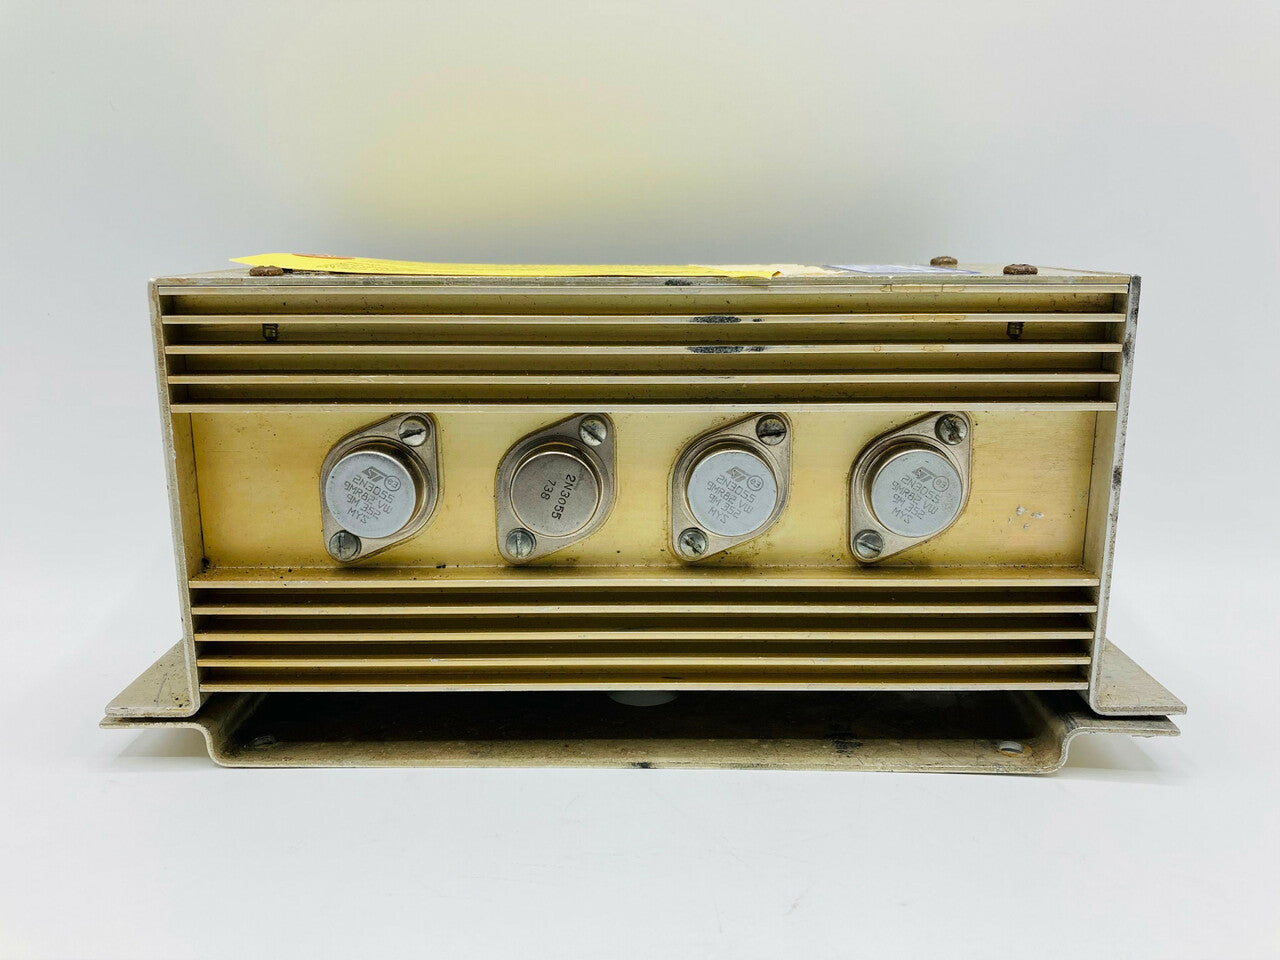 Edo-Aire Mitchell Autopilot Amplifier - Part Number: 1D395